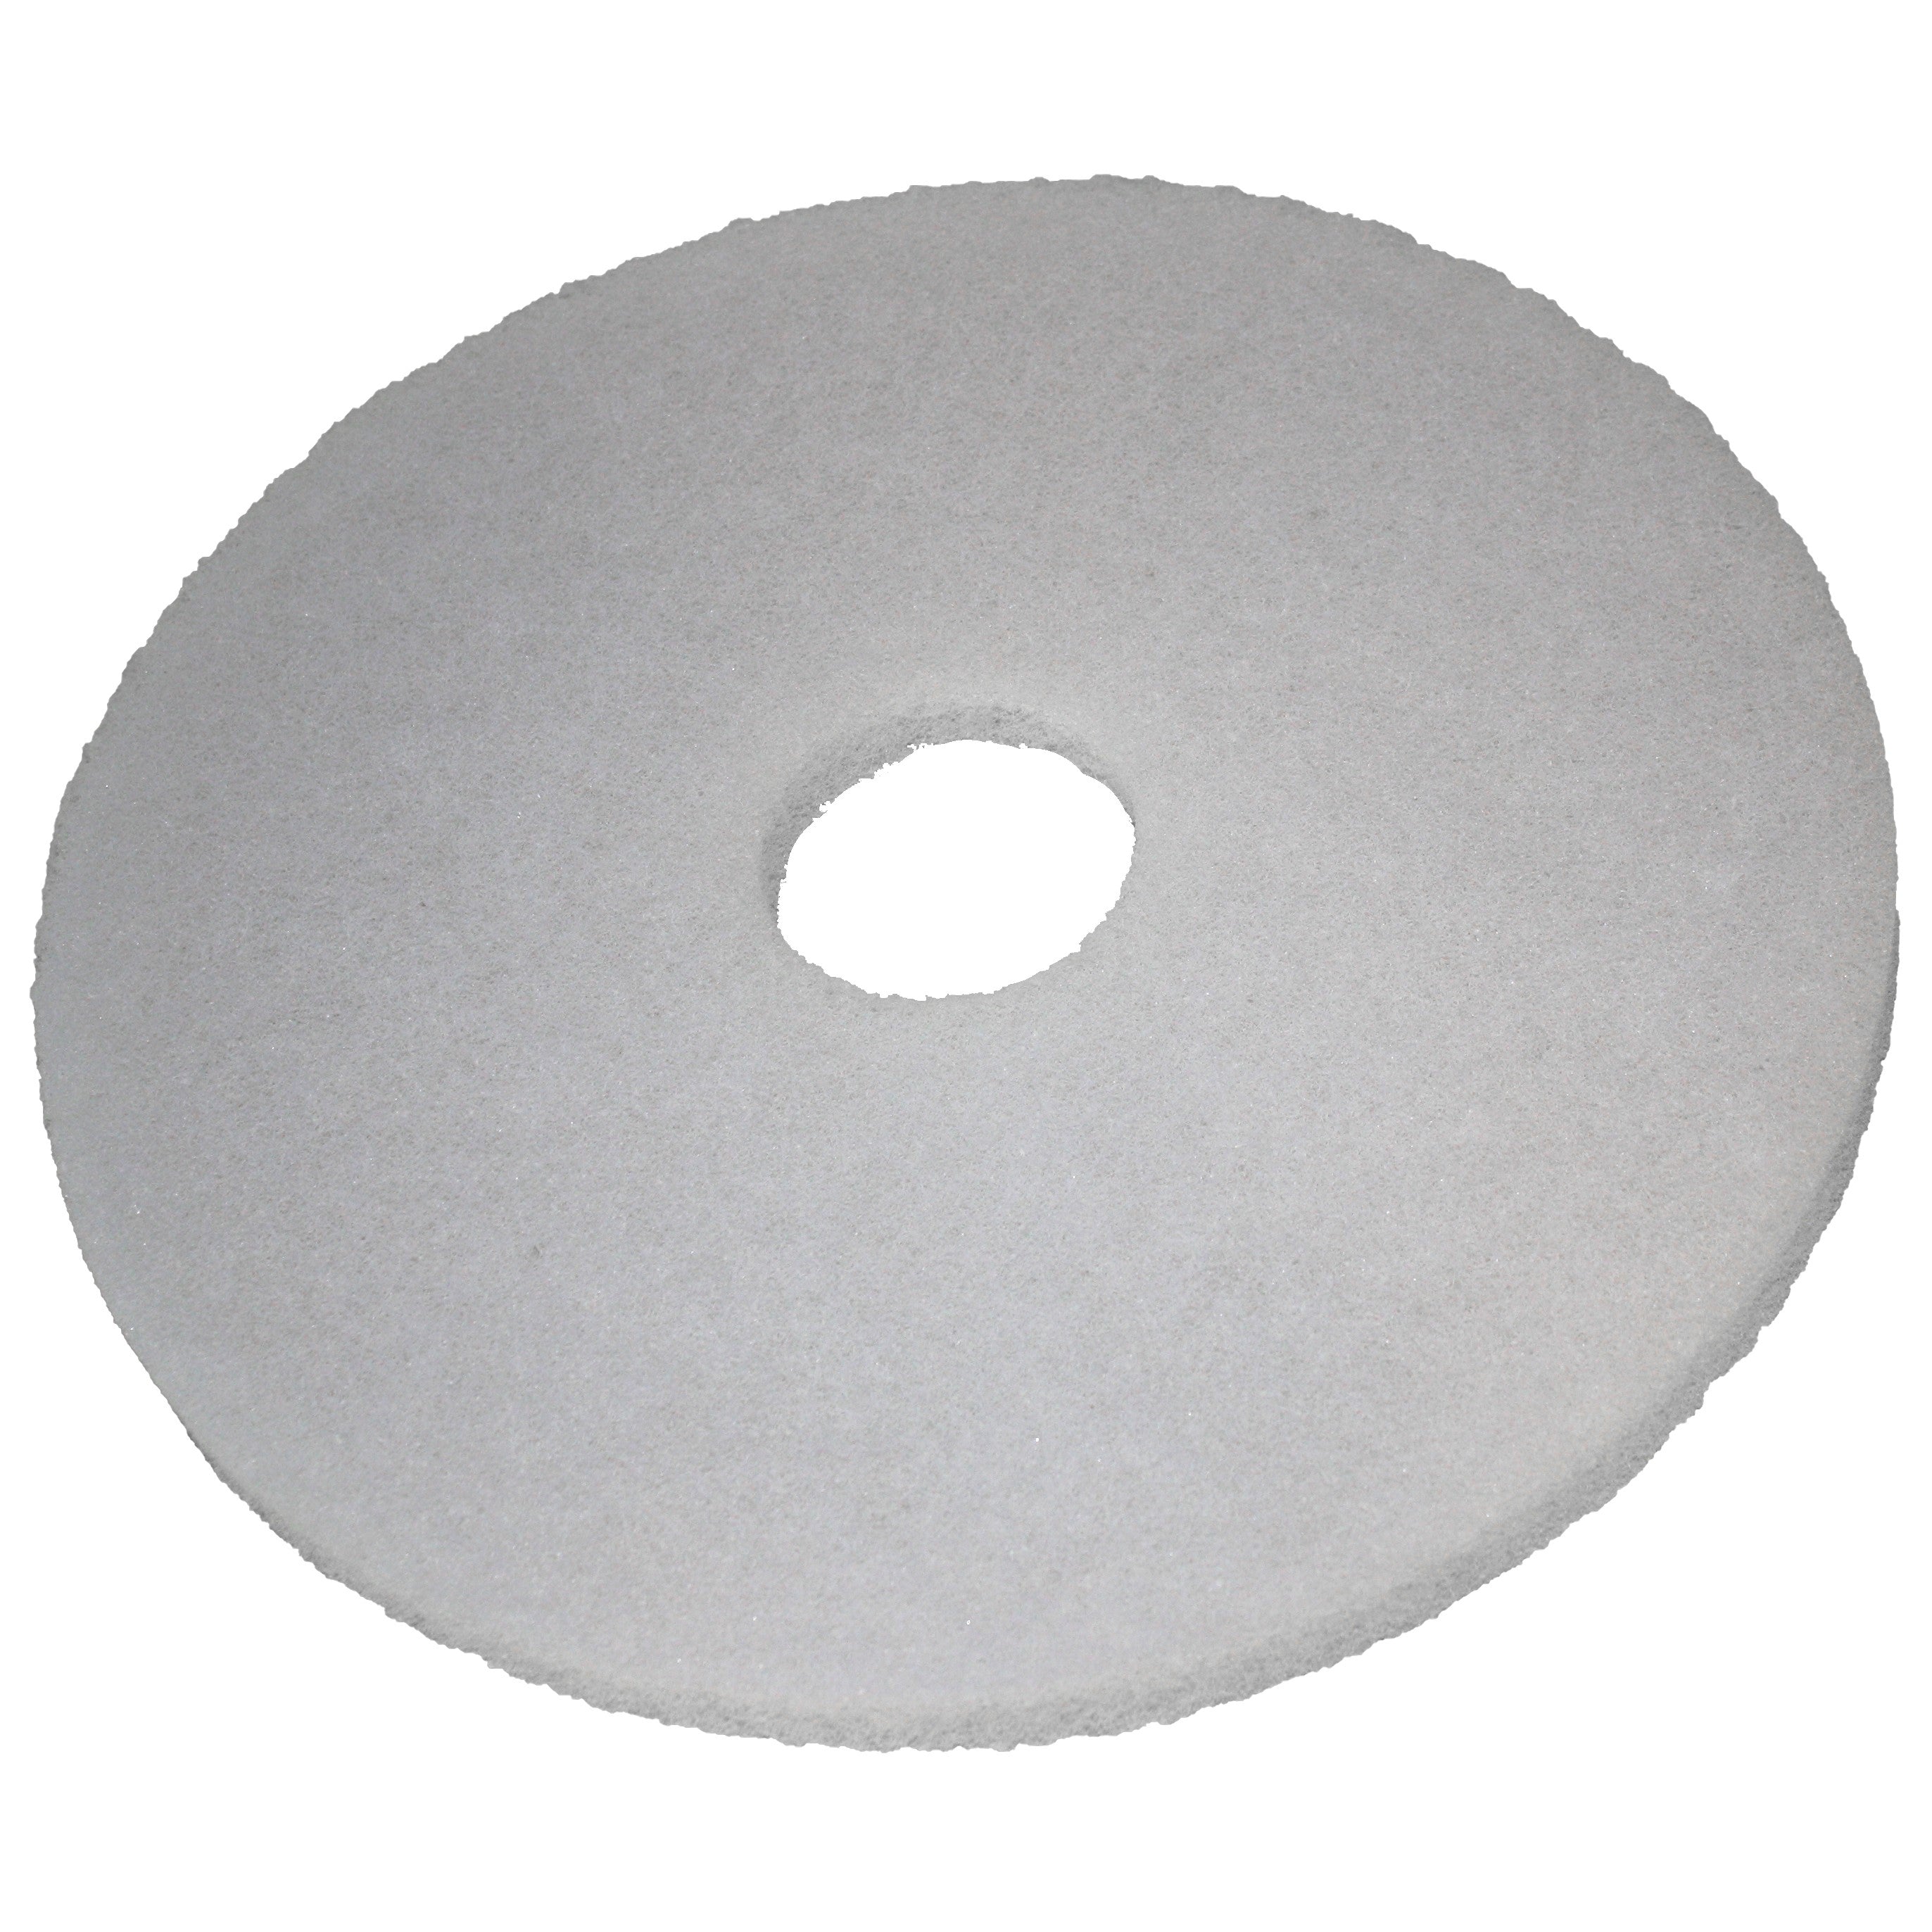 Pad blanc, Ø 165 mm, polyester